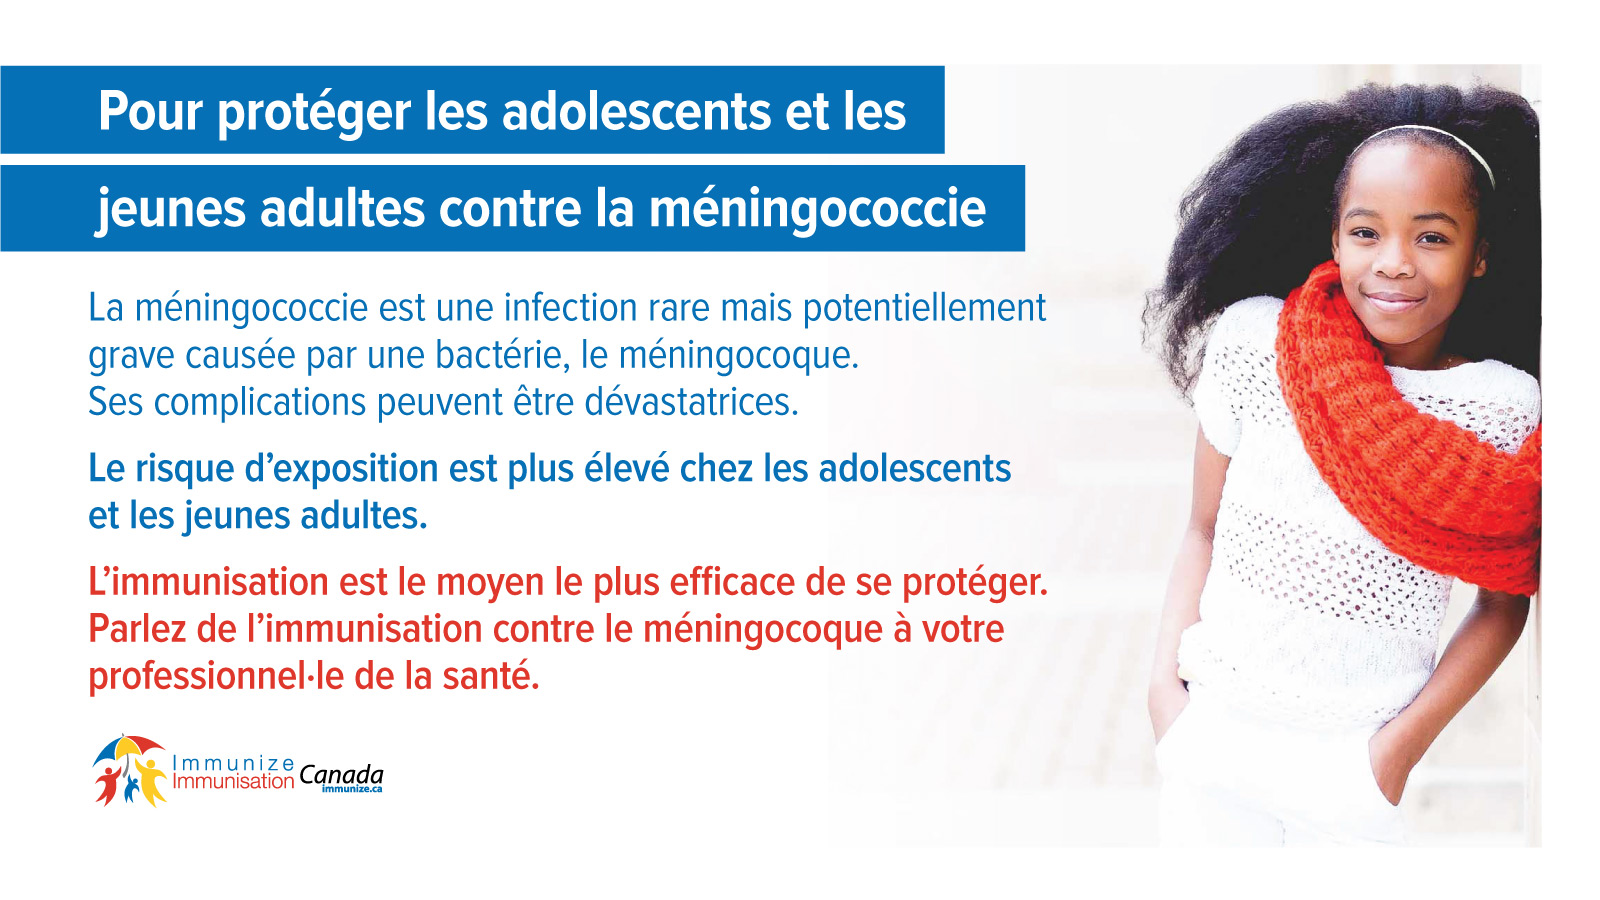 Pour protéger les adolescents et les jeunes adultes contre la méningococcie - image 1 pour Twitter